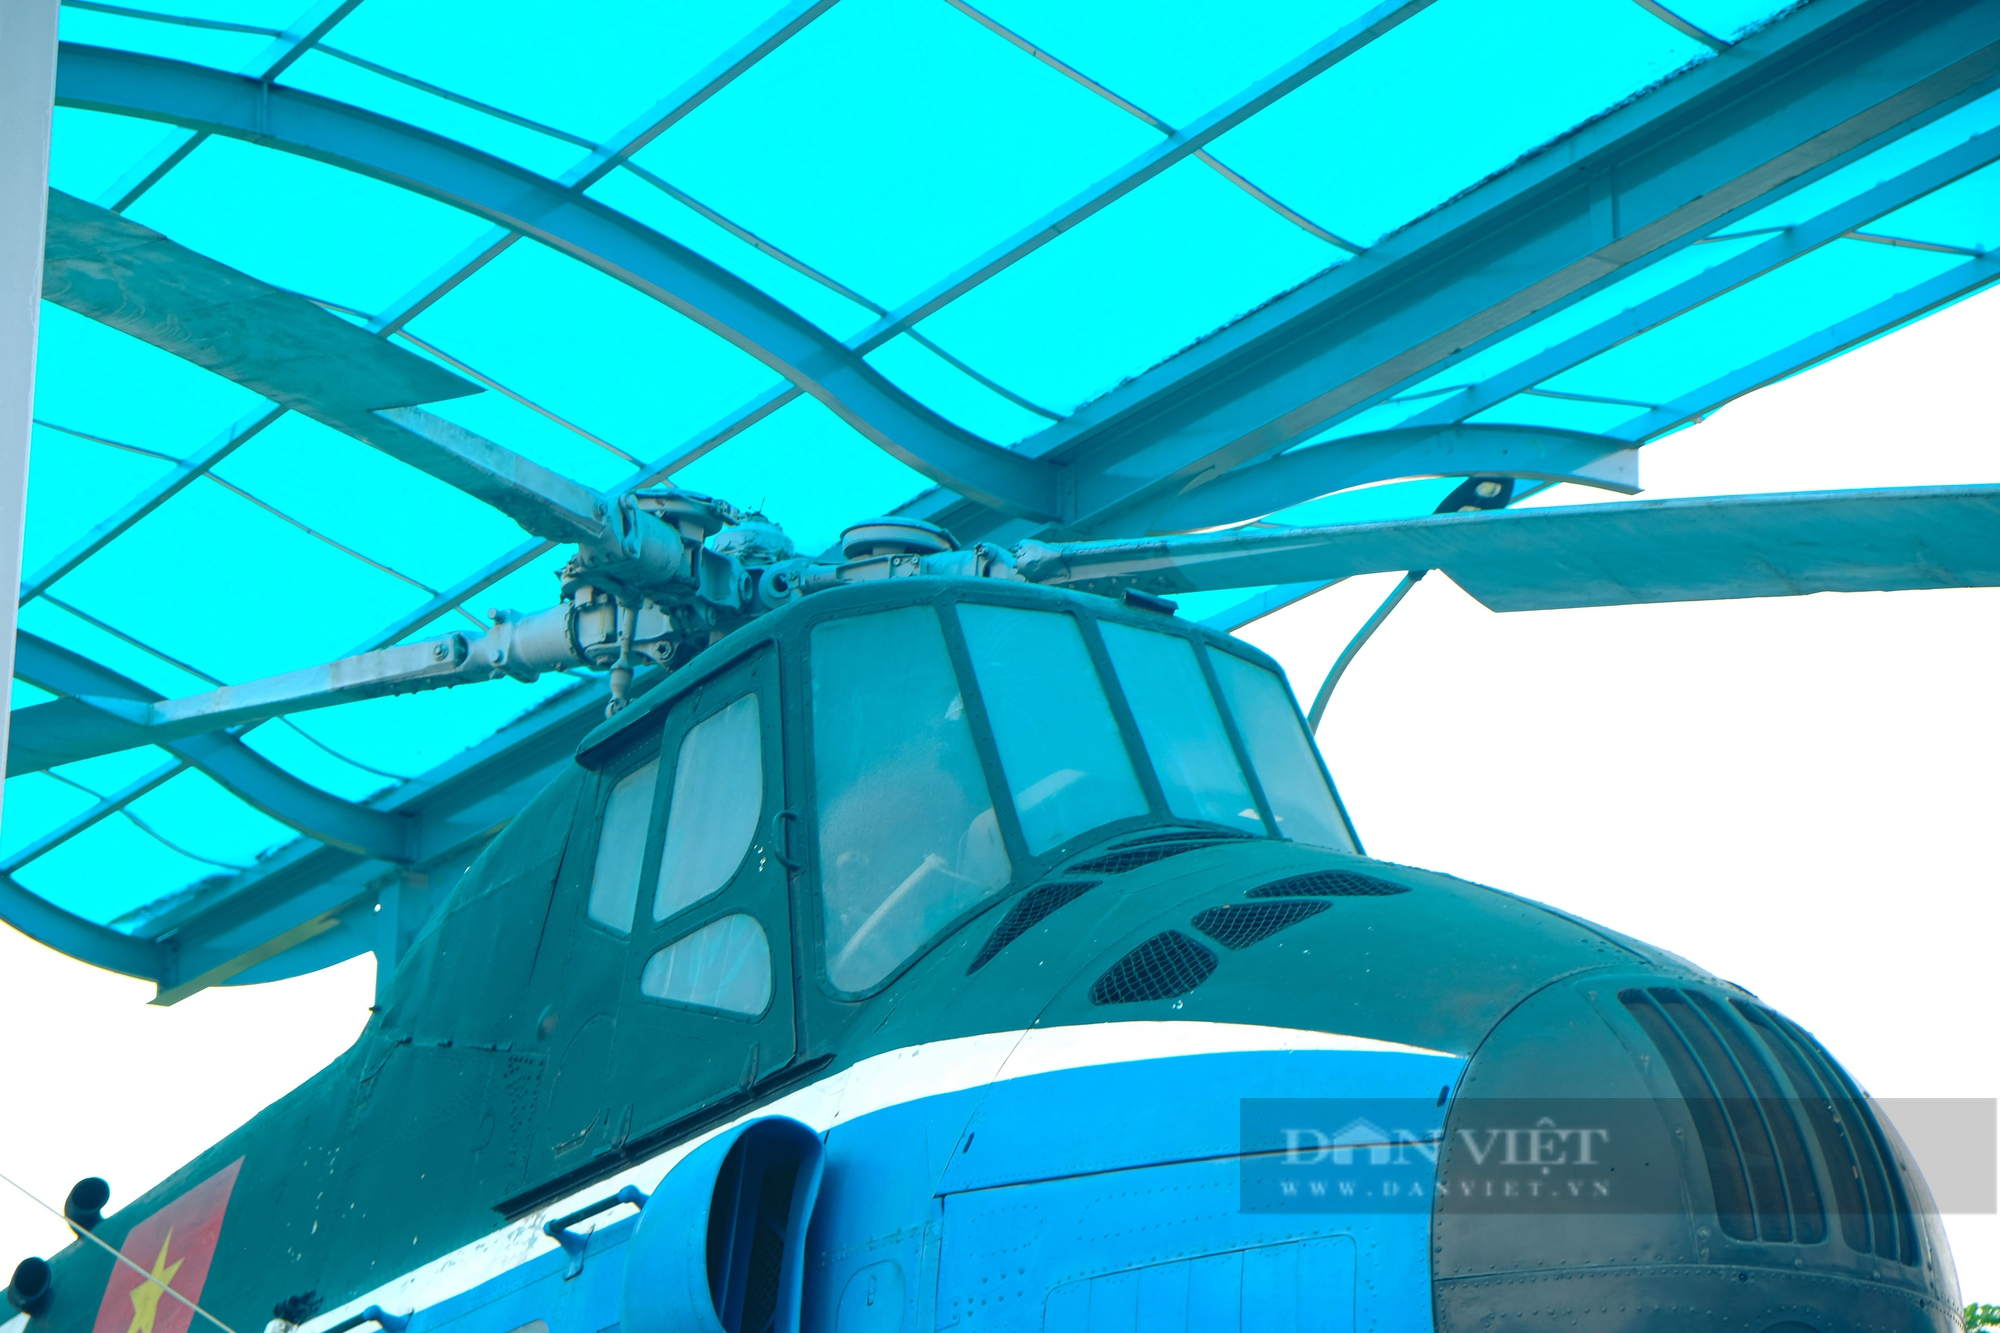 Trực thăng vận tải Mi-4 từng tháp tùng Bác Hồ đi công tác nhìn ra sao? - Ảnh 6.